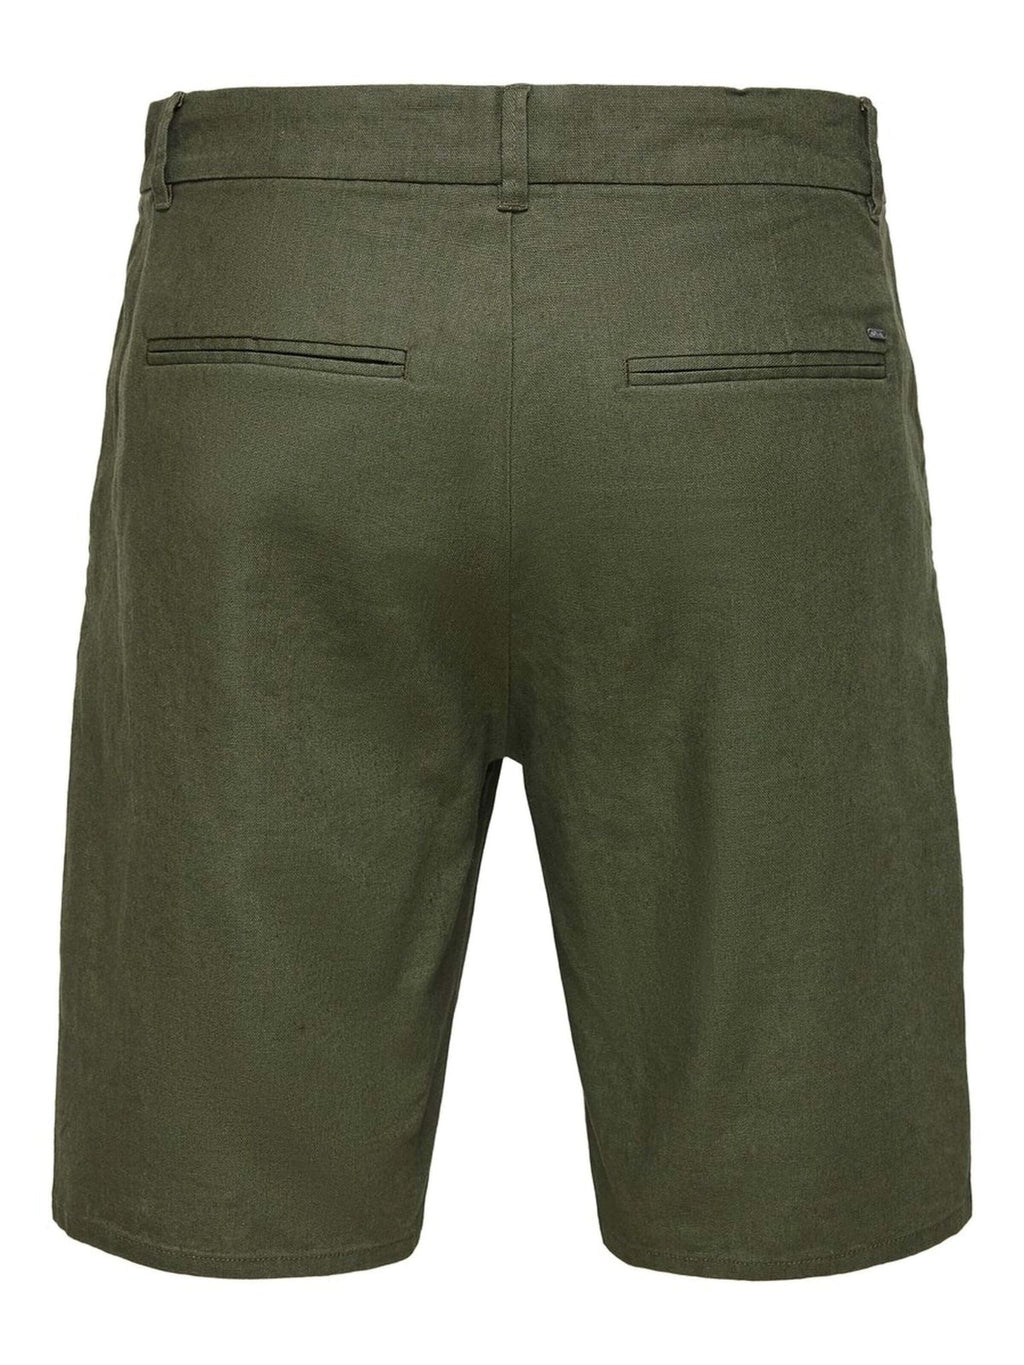 Chloisteáil shorts - glas olóige